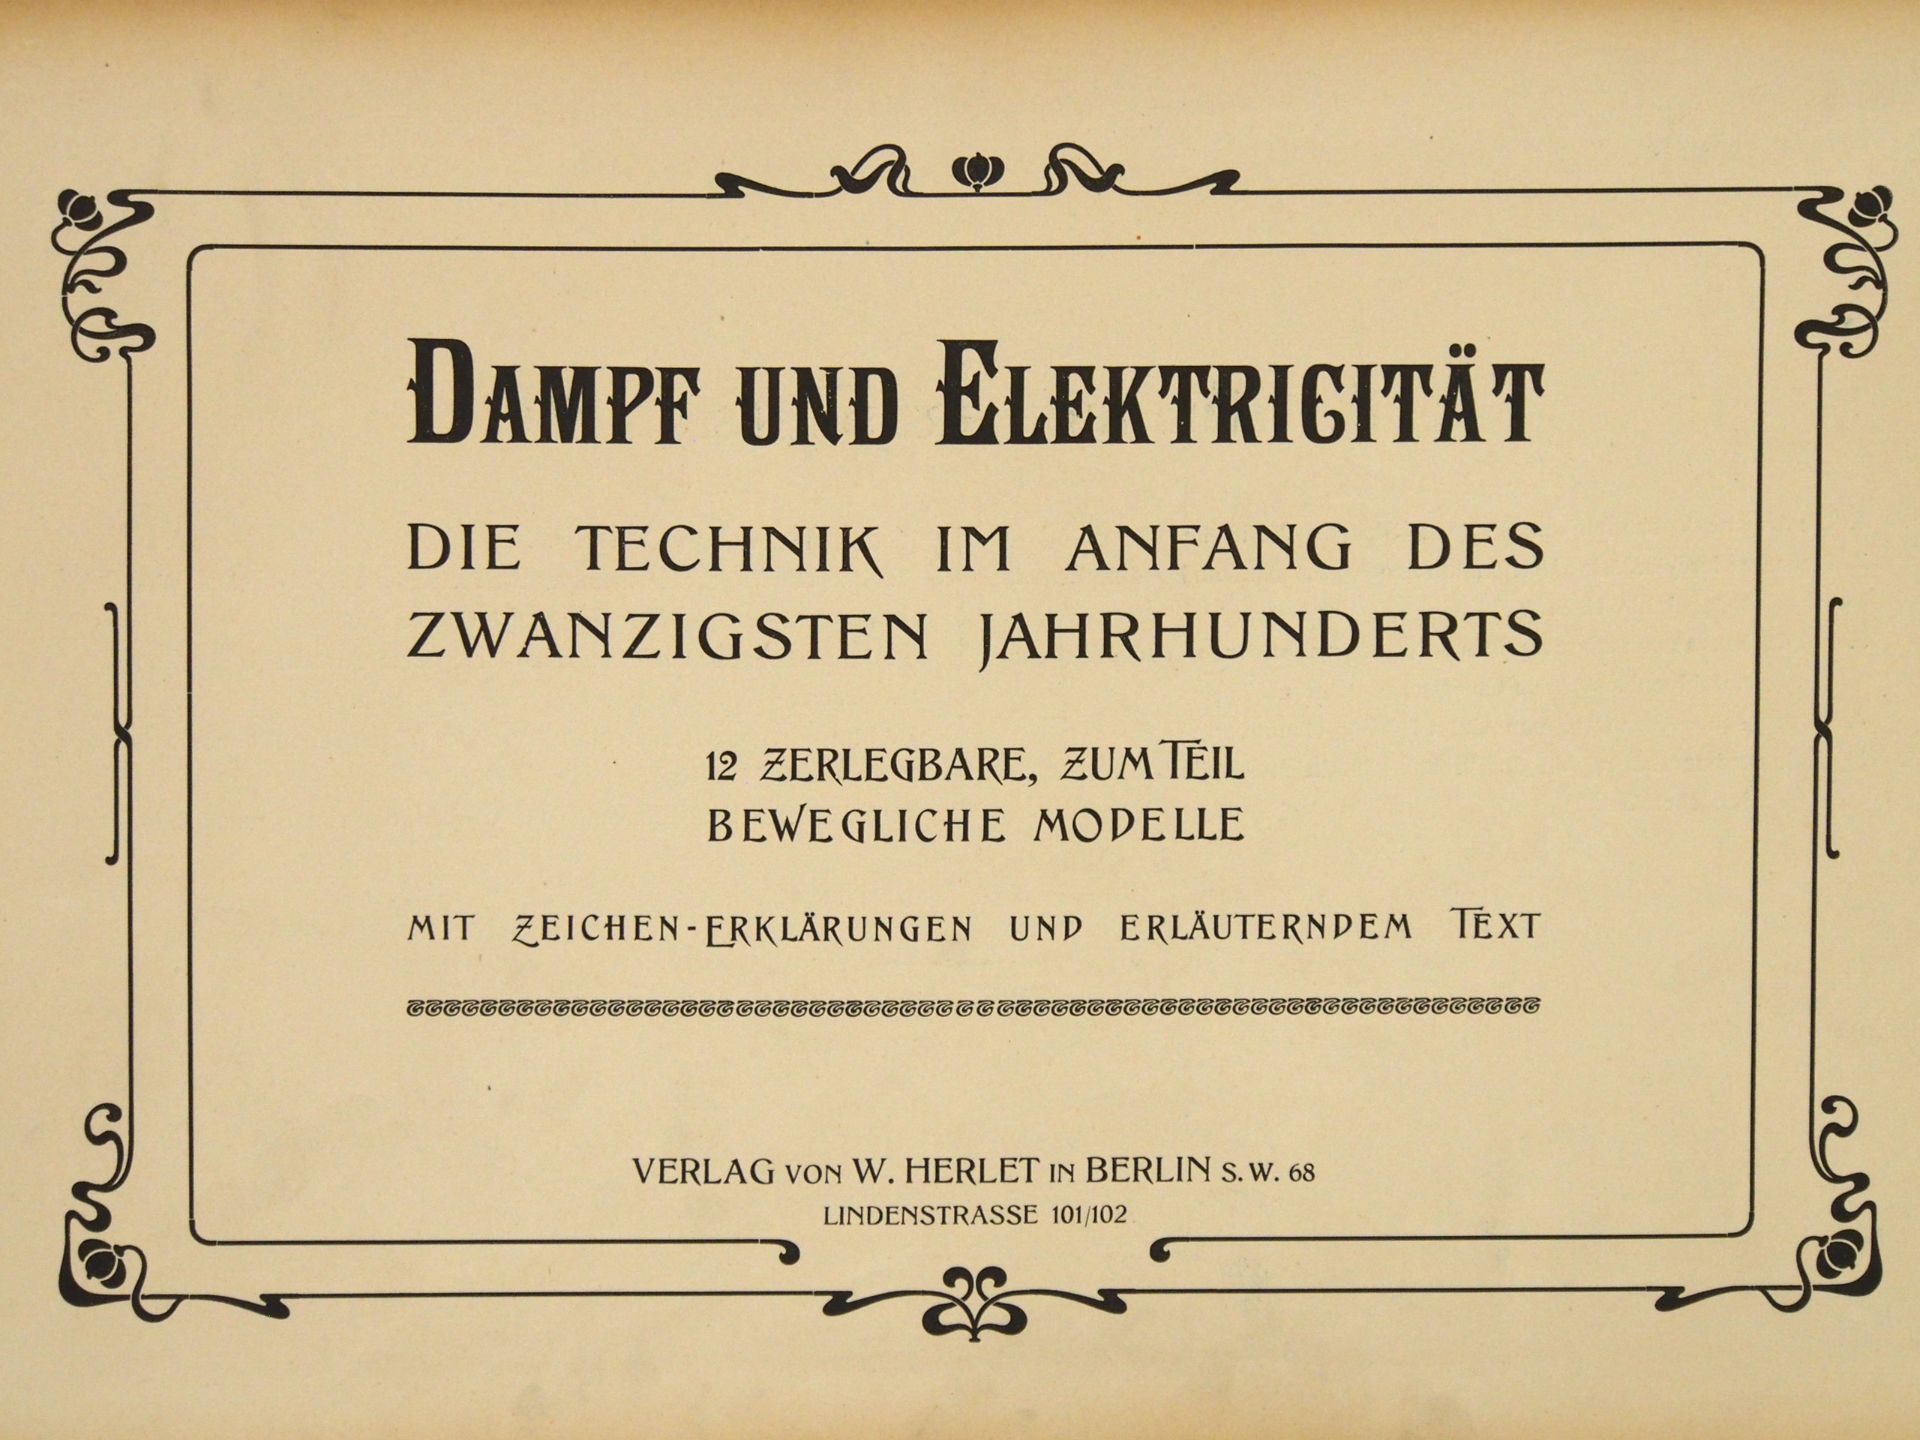 Dampf und Elektricität - Die Technik im Anfang des 20. Jahrhunderts - Image 2 of 3